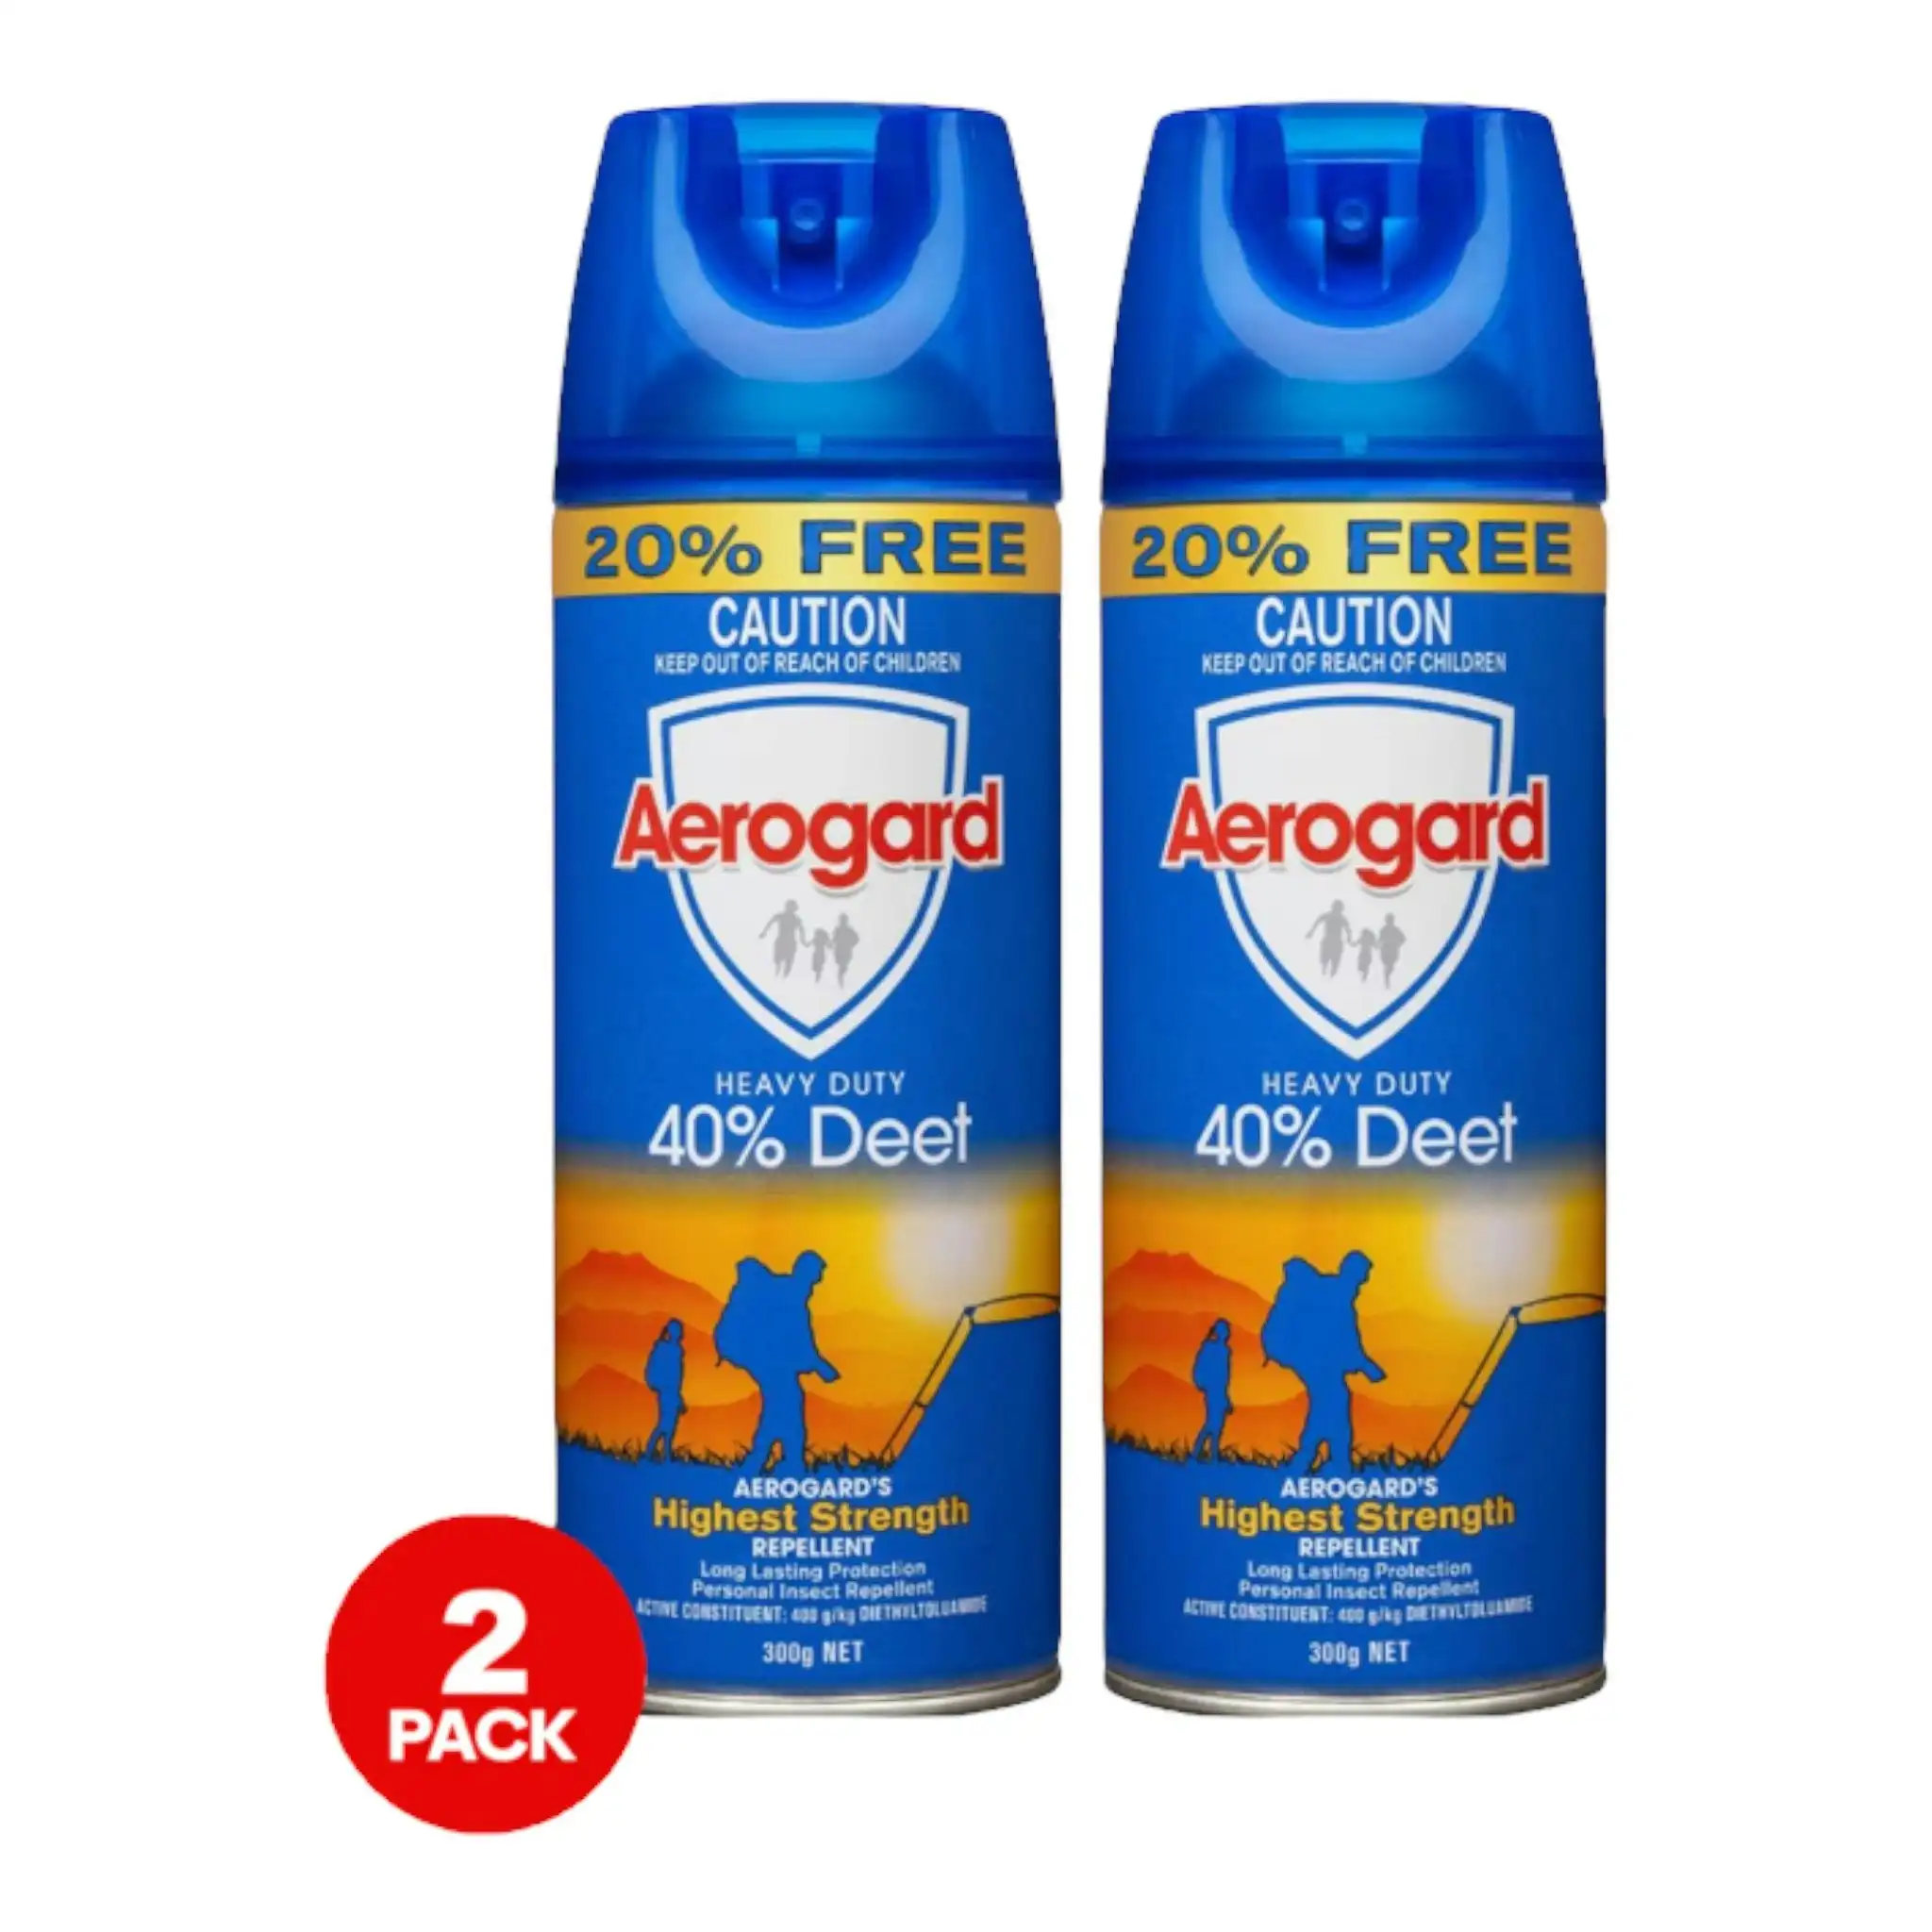 2 Pack Aerogard Insect Repellent 40% Deet 300g